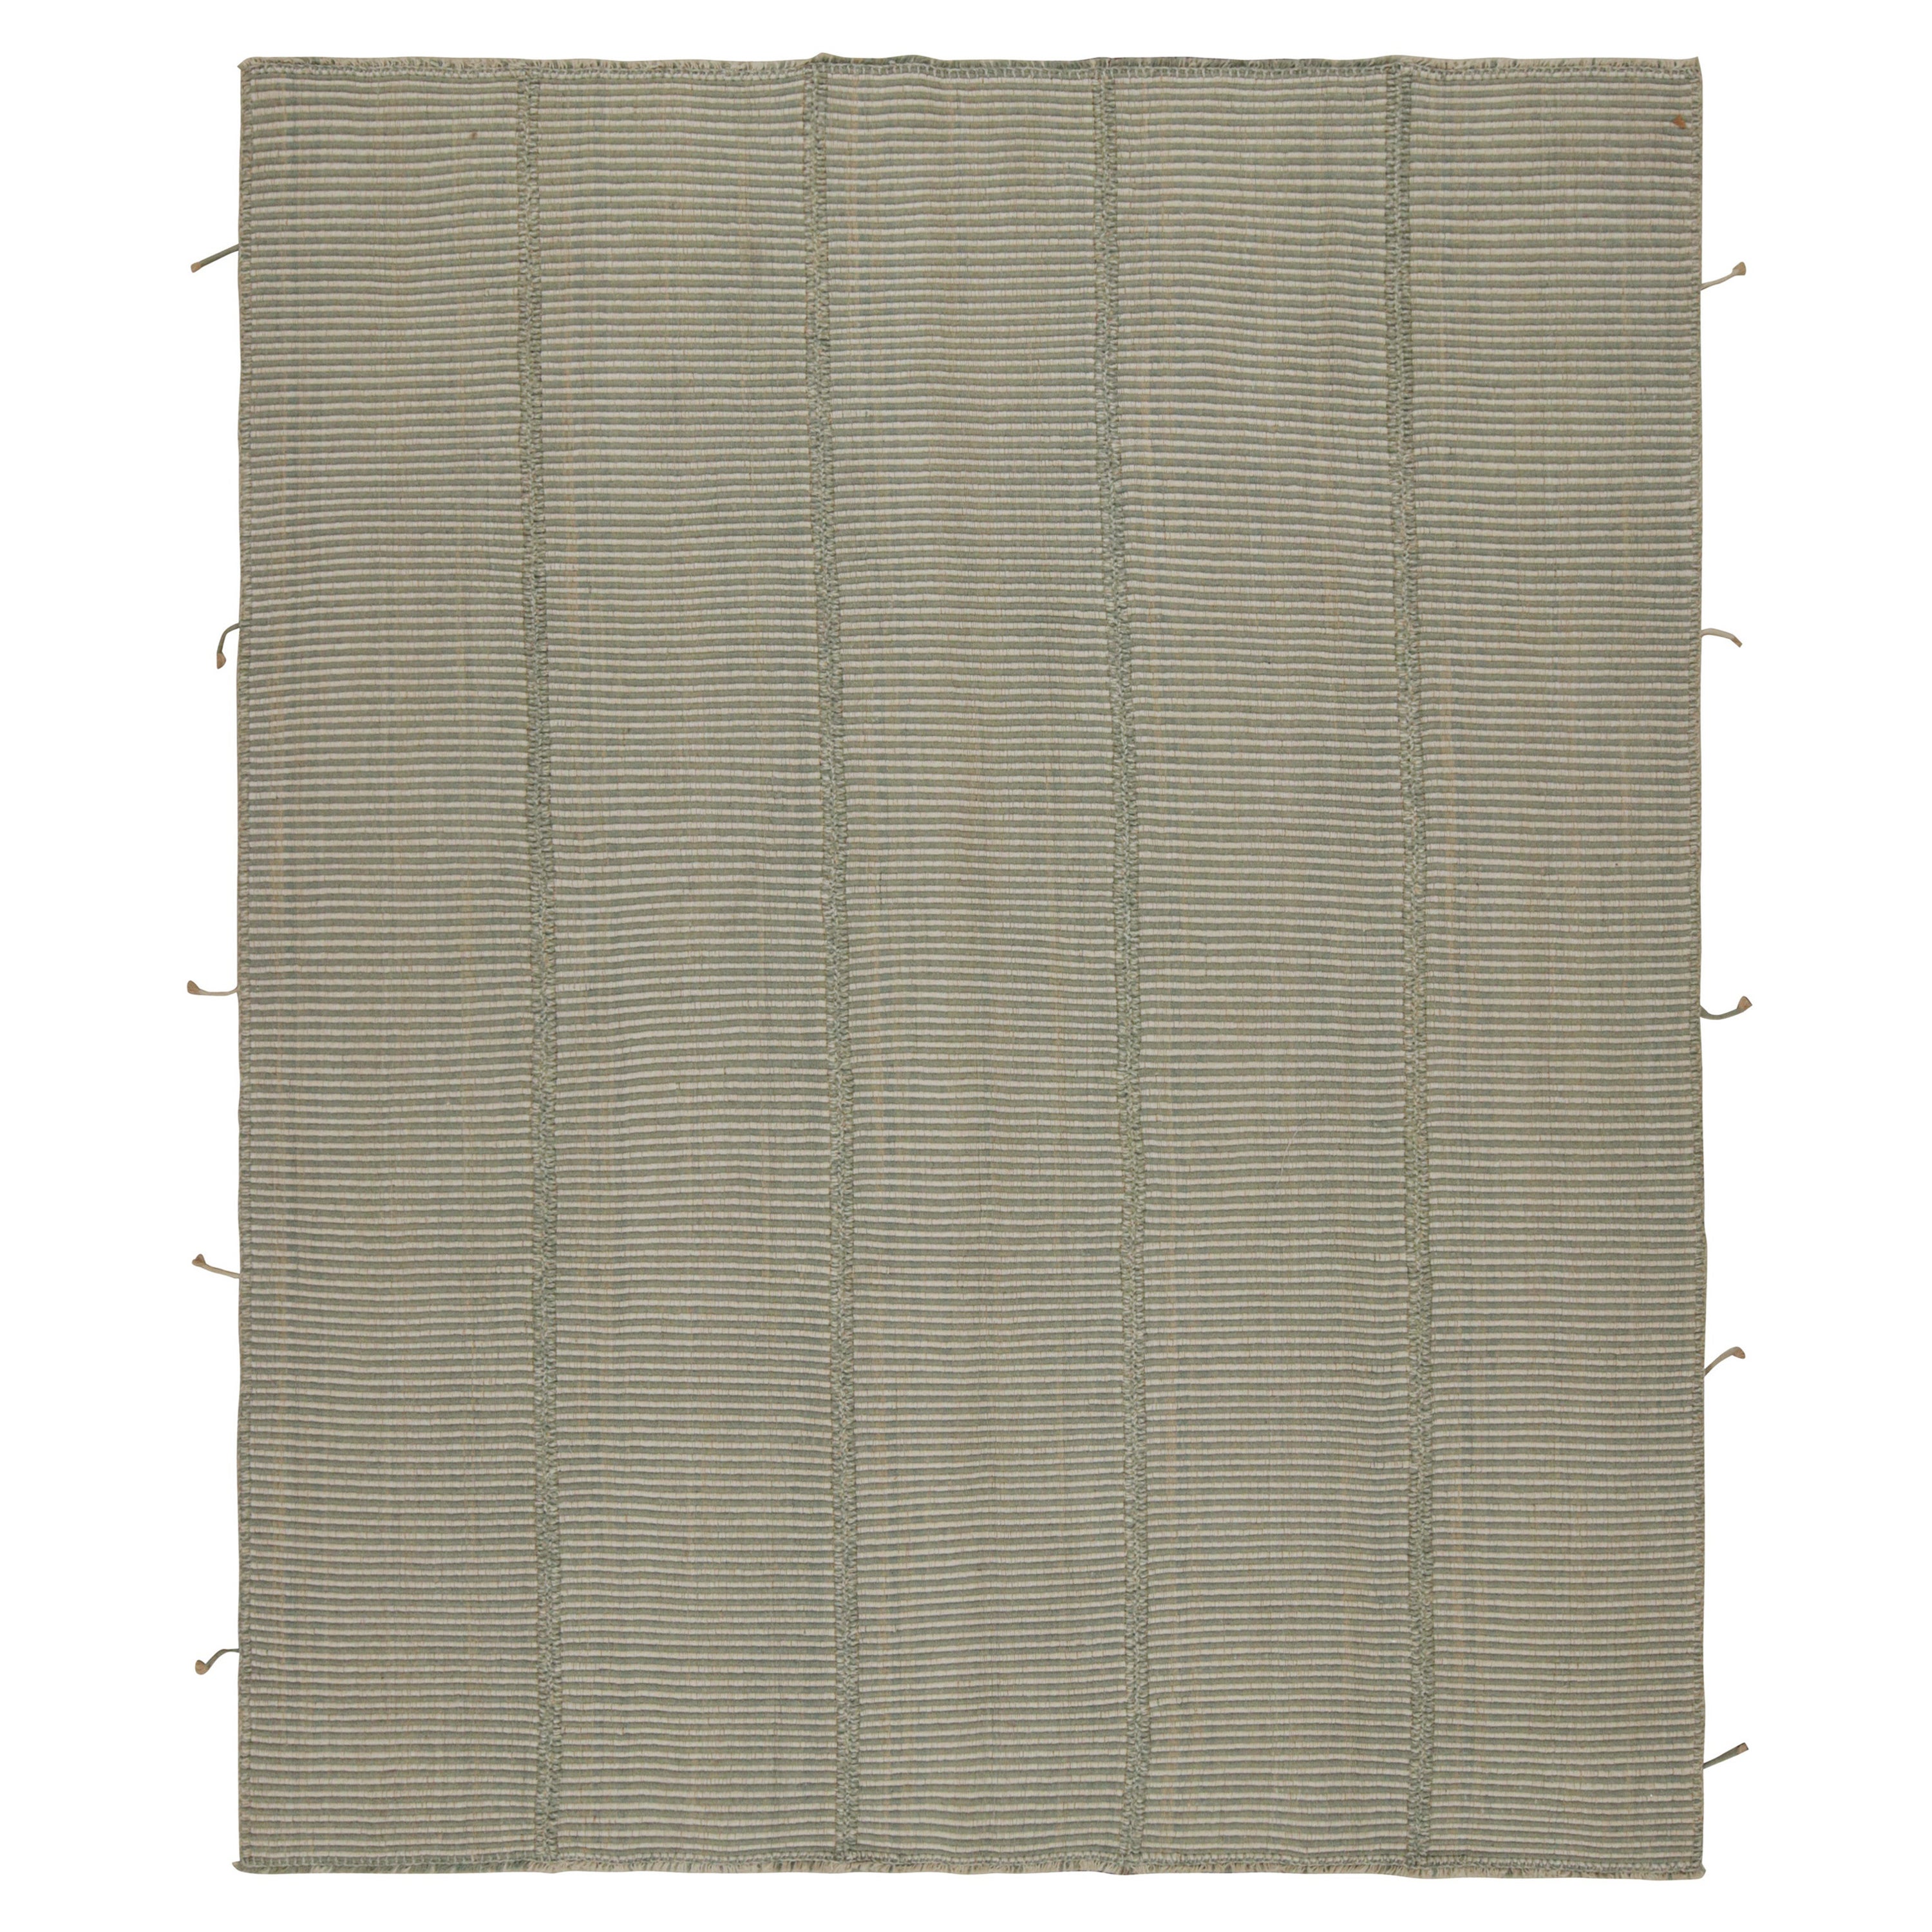 Rug & Kilim's Modern Kilim in Gray with Stripes & Beige-Blue Accents (Kilim moderne en gris avec des rayures et des accents bleus-beiges)